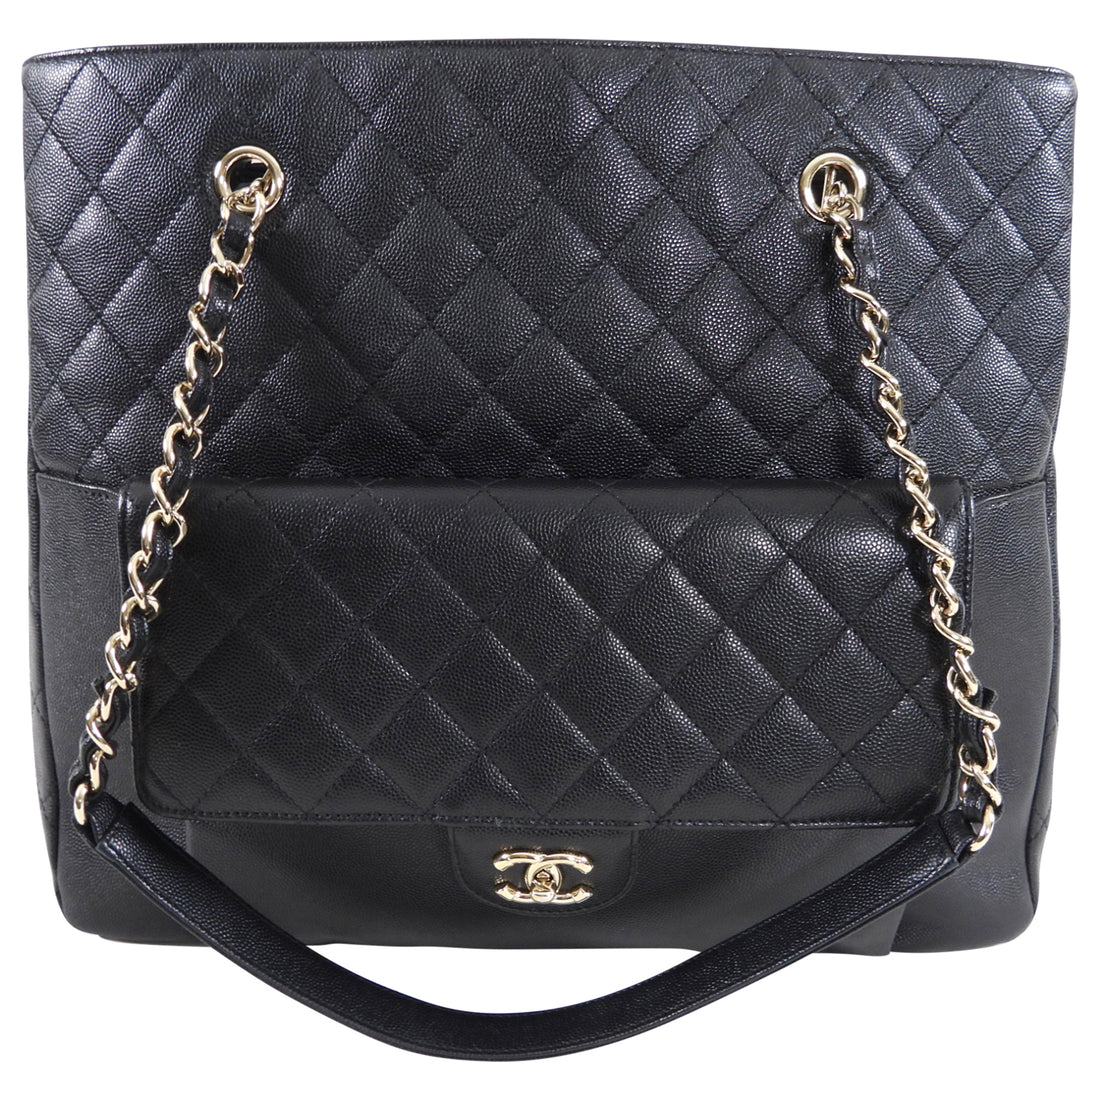 Chanel 2019 Black Caviar Flap Pocket Large Tote Bag – I MISS YOU VINTAGE